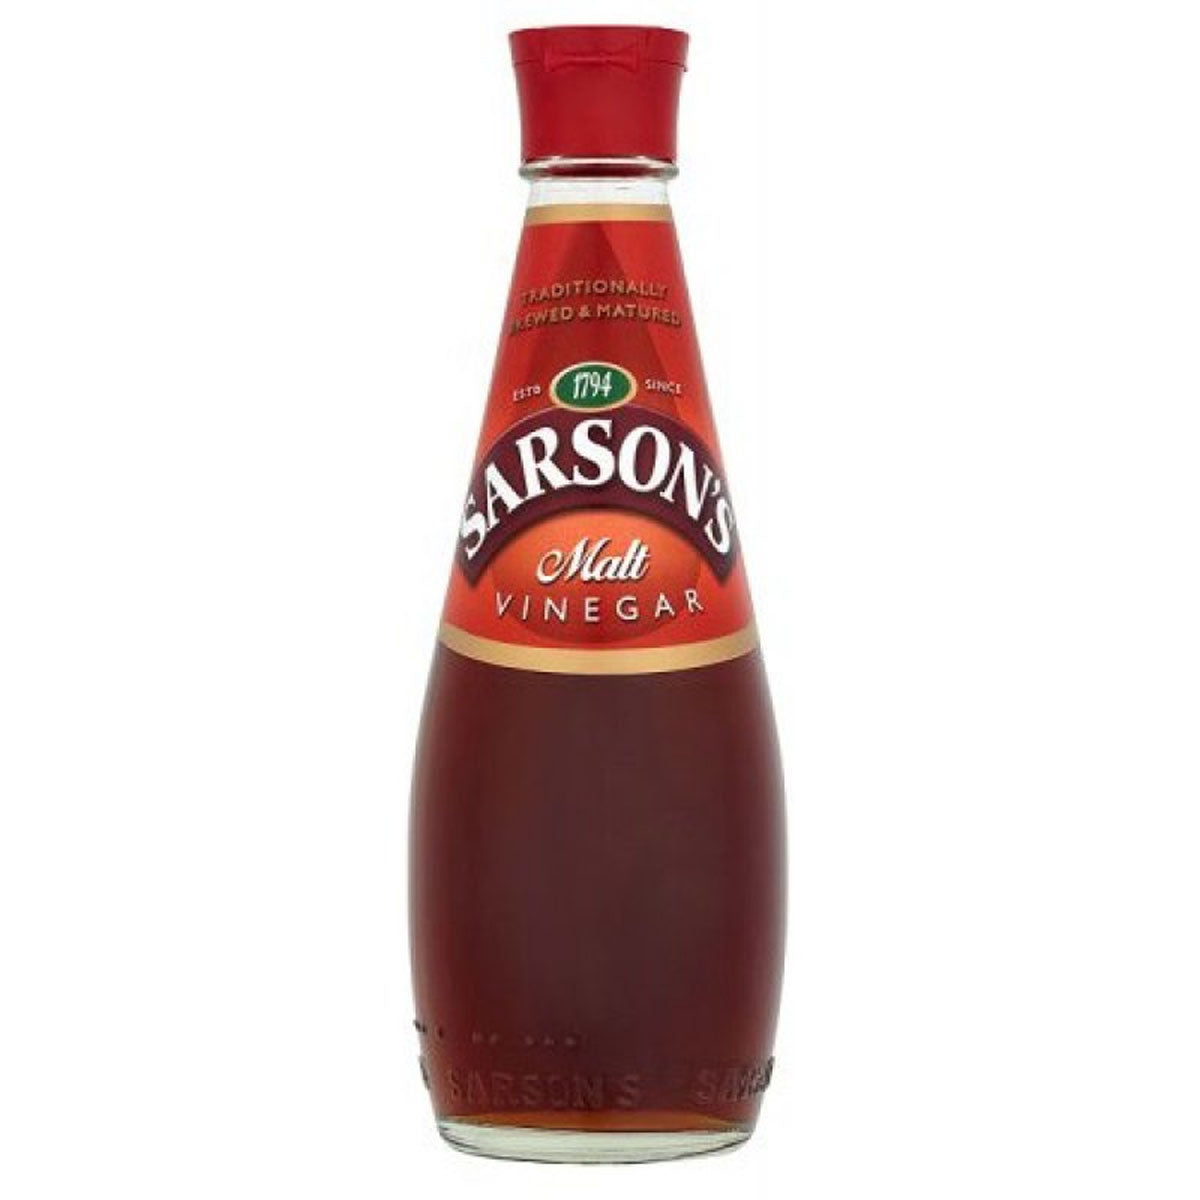 A bottle of Sarsons - Malt Vinegar - 400ml on a white background.